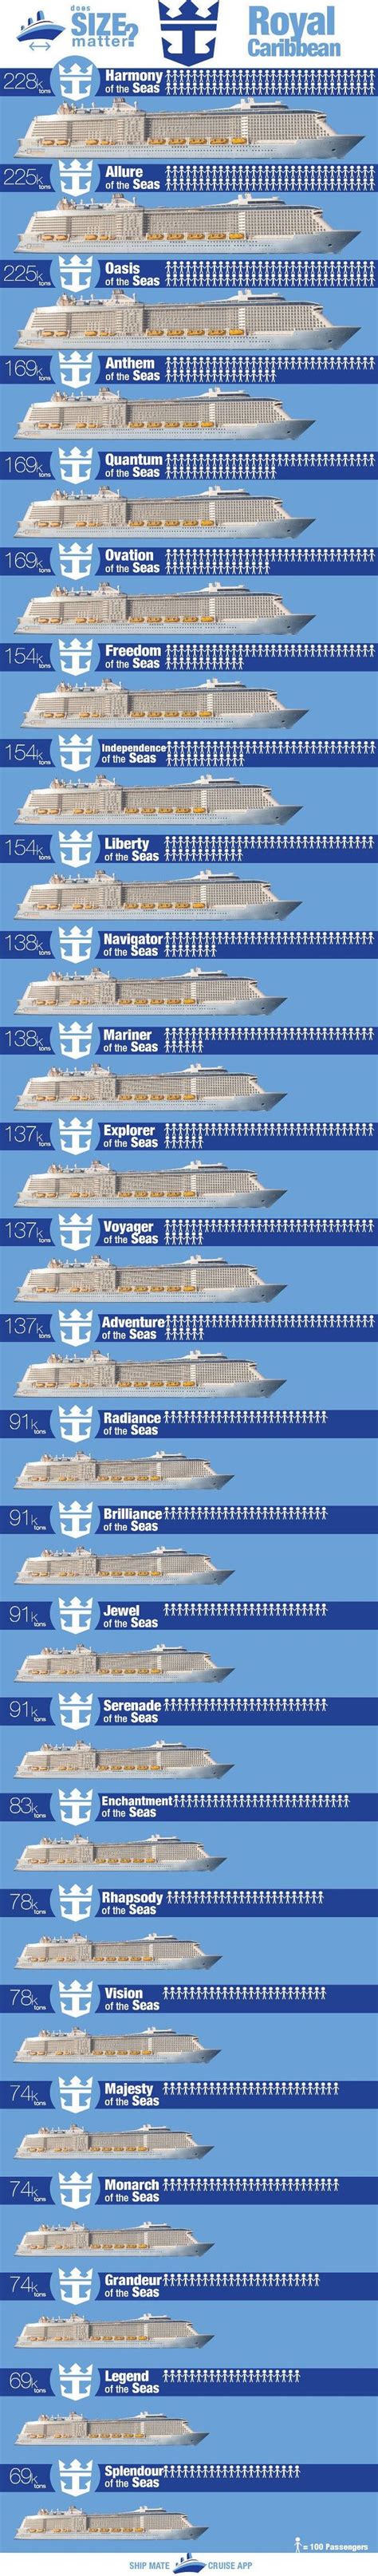 Royal Caribbean Ships By Size In 2020 Royal Caribbean Ships Royal